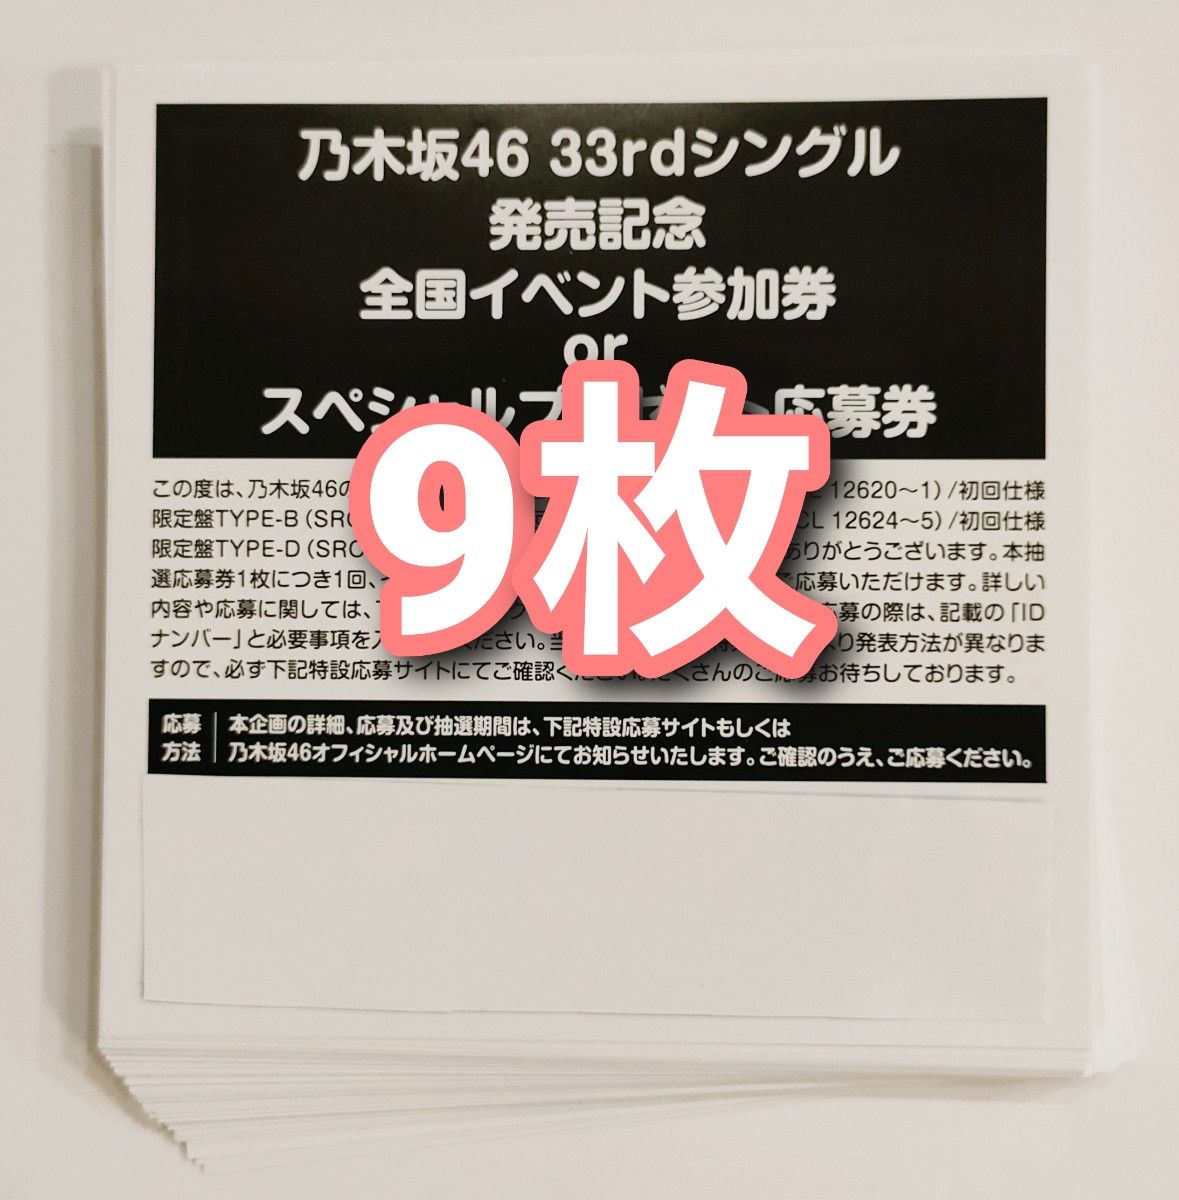 乃木坂46 おひとりさま天国 スペシャル抽選応募券 シリアルナンバー 9